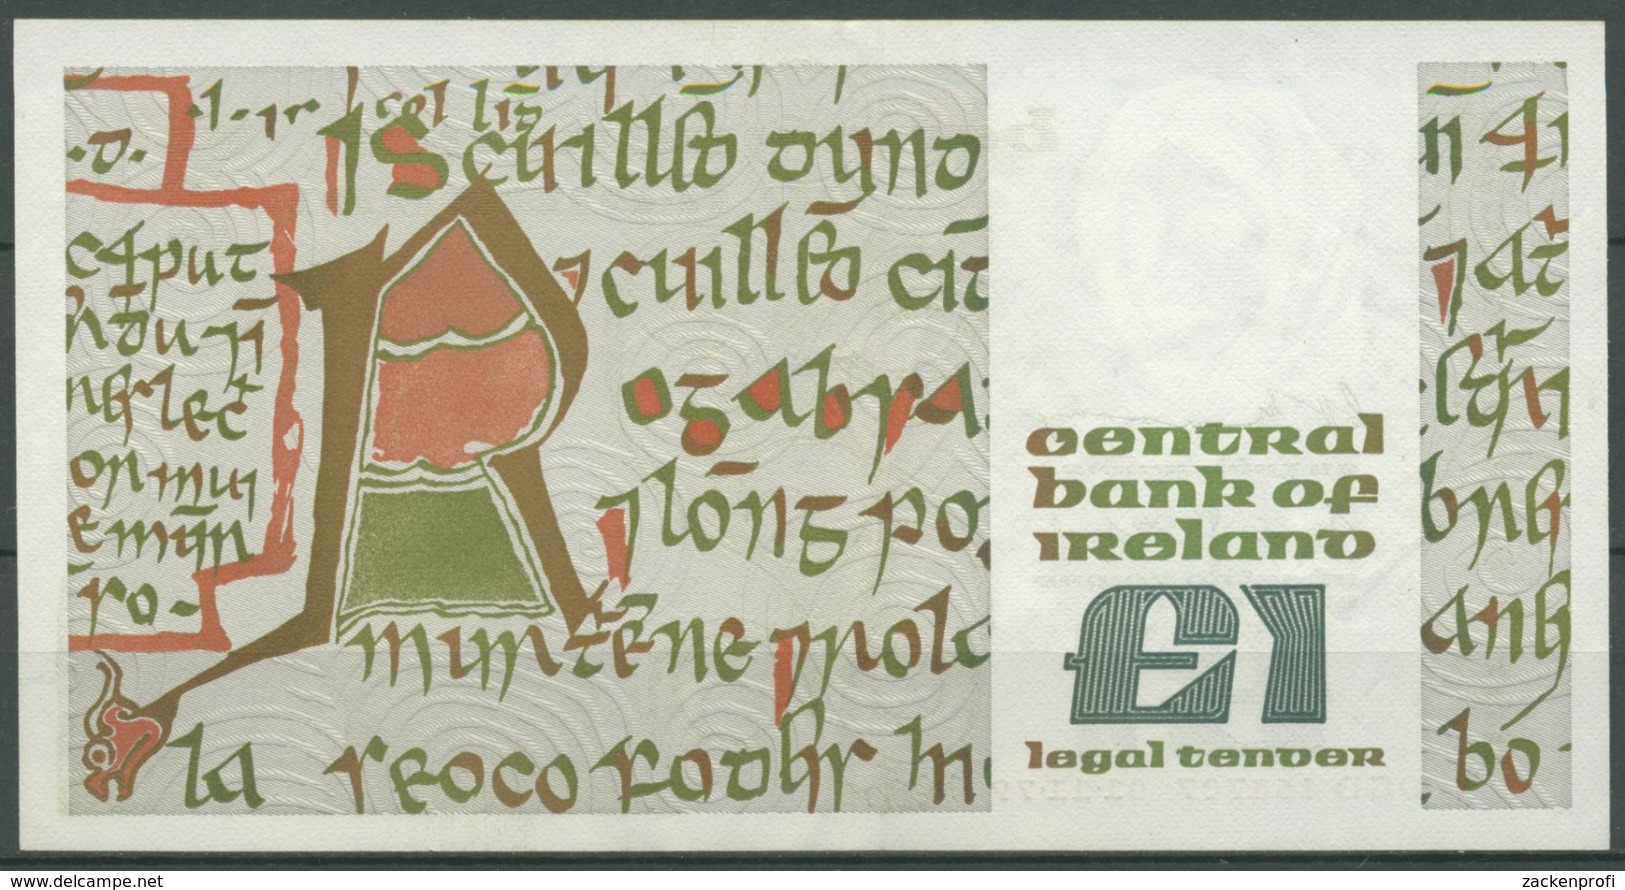 Irland 1 Pound 01.11.1979, Queen Medb, KM 70 B, Gebraucht (K65) - Ireland